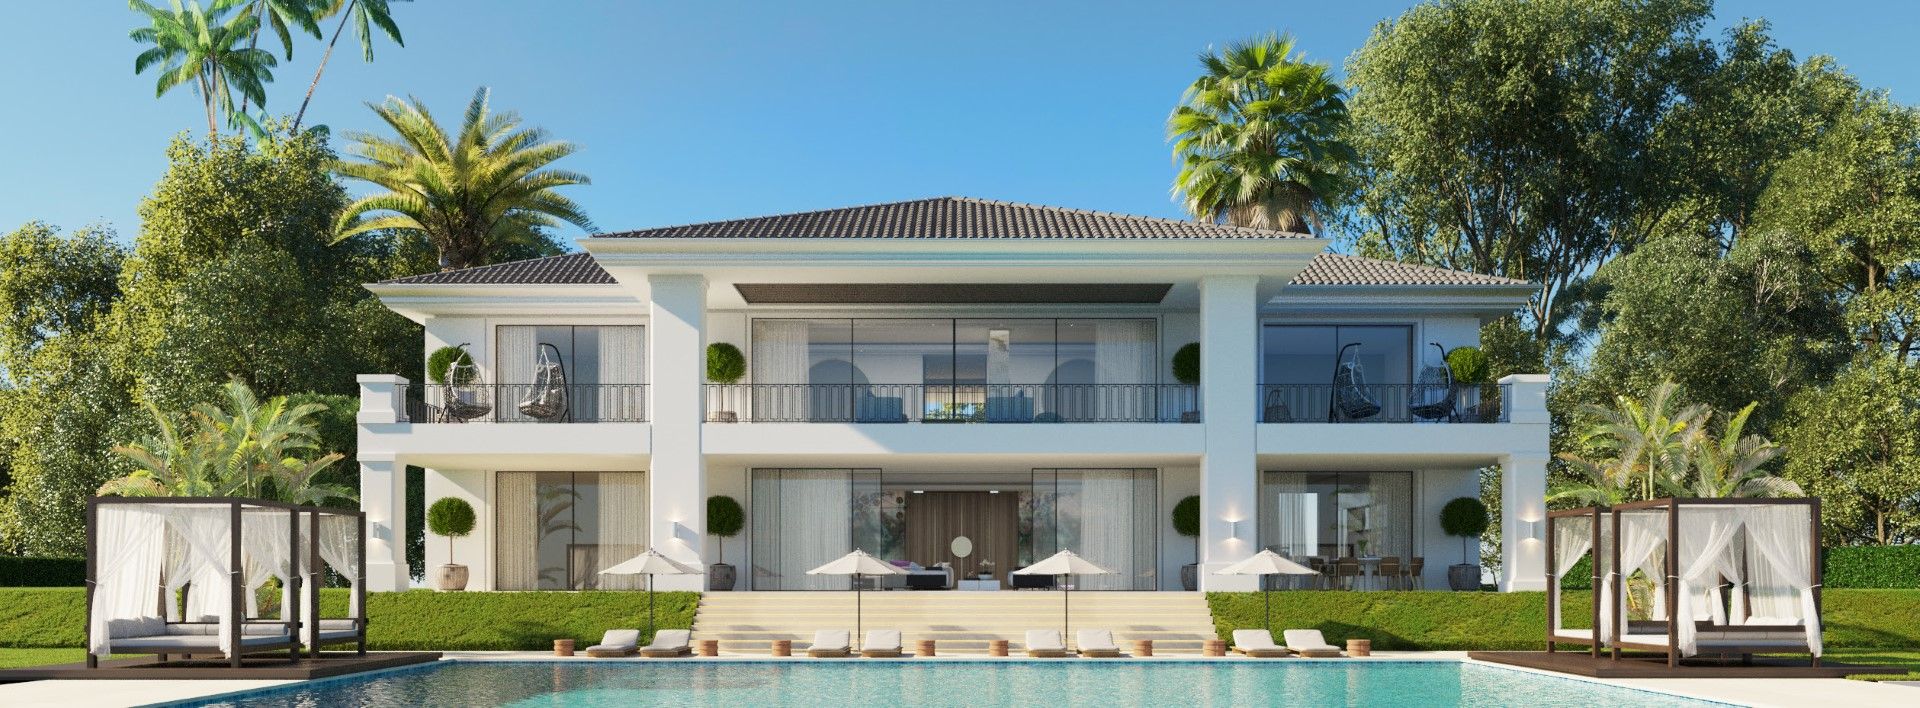 New stunning modern front line golf villa | Engel & Völkers Marbella